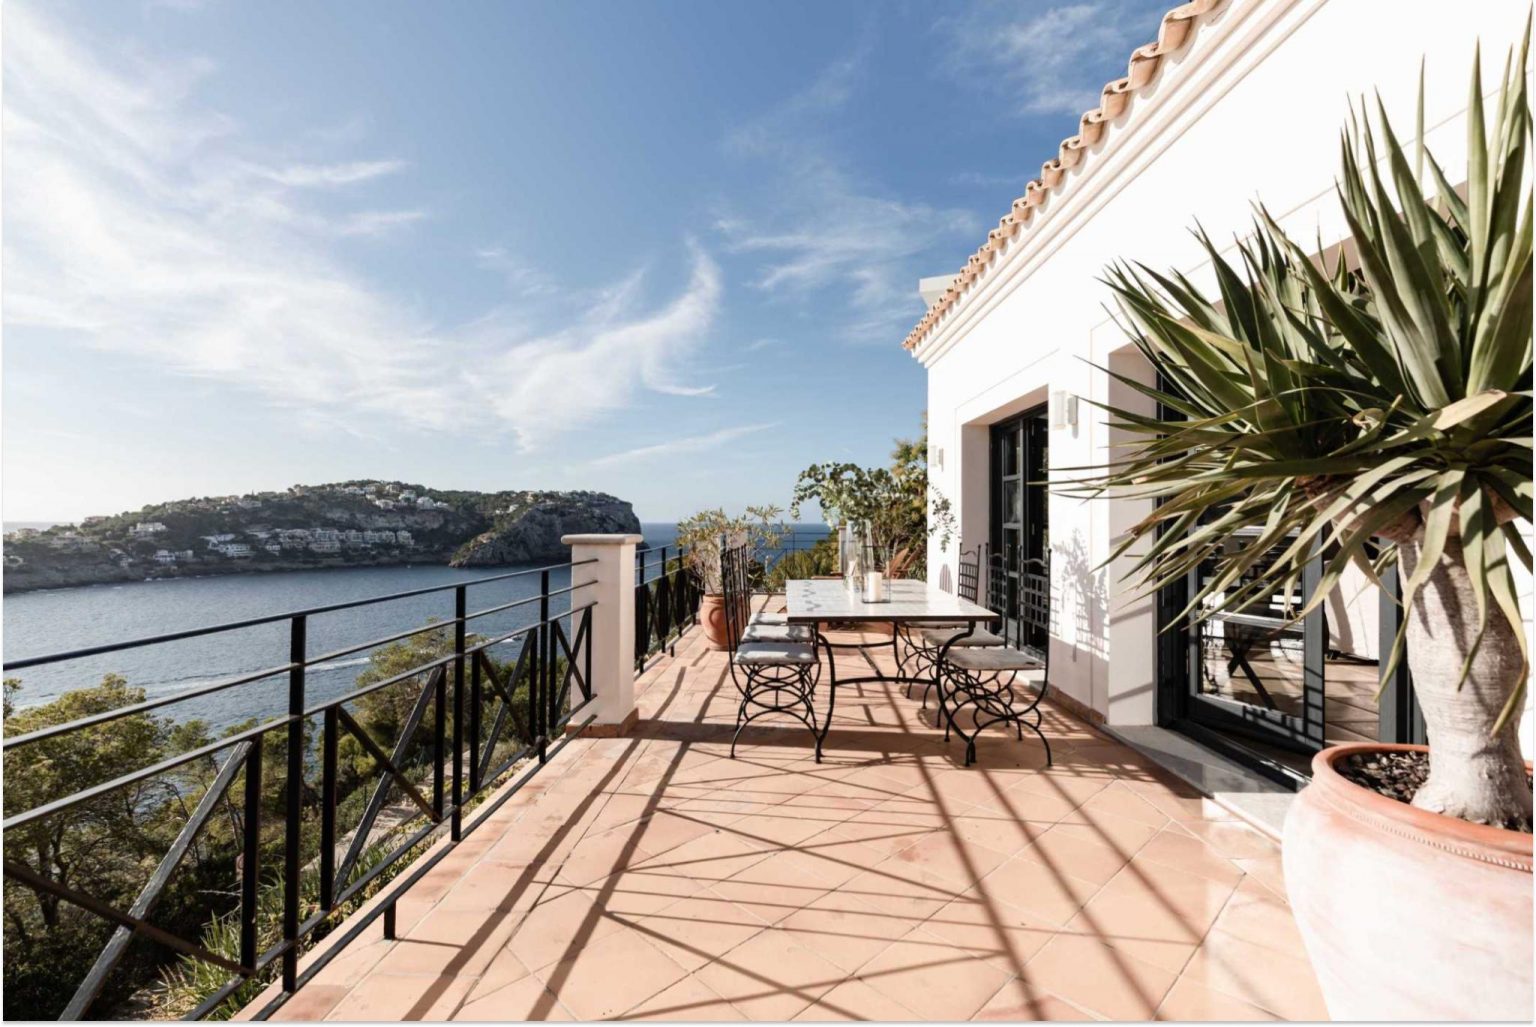 maison en hauteur avec terrasse vue mer Majorque